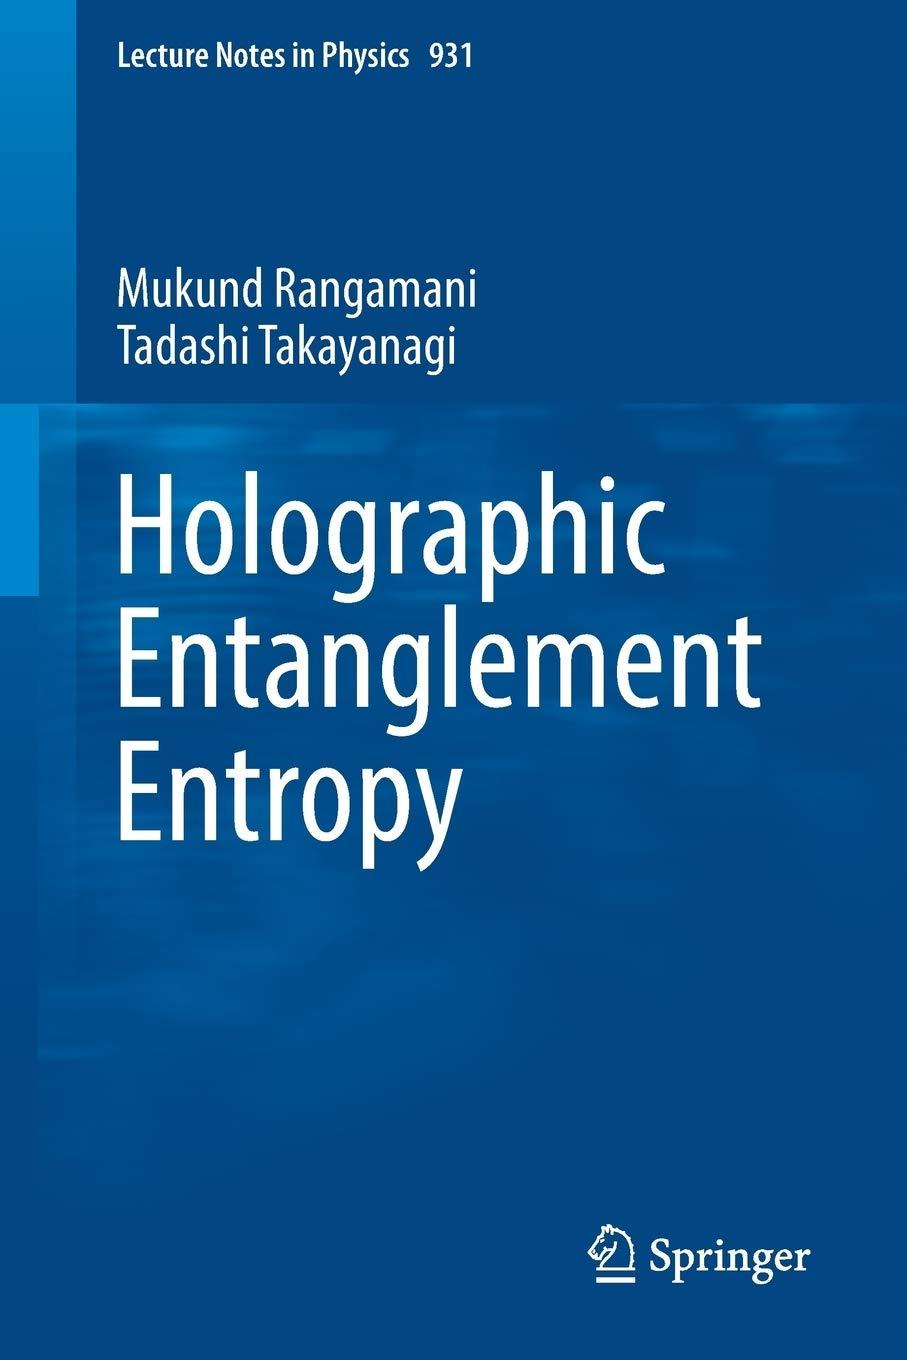 holographic entanglement entropy 1st edition mukund rangamani, tadashi takayanagi 3319525719, 978-3319525716